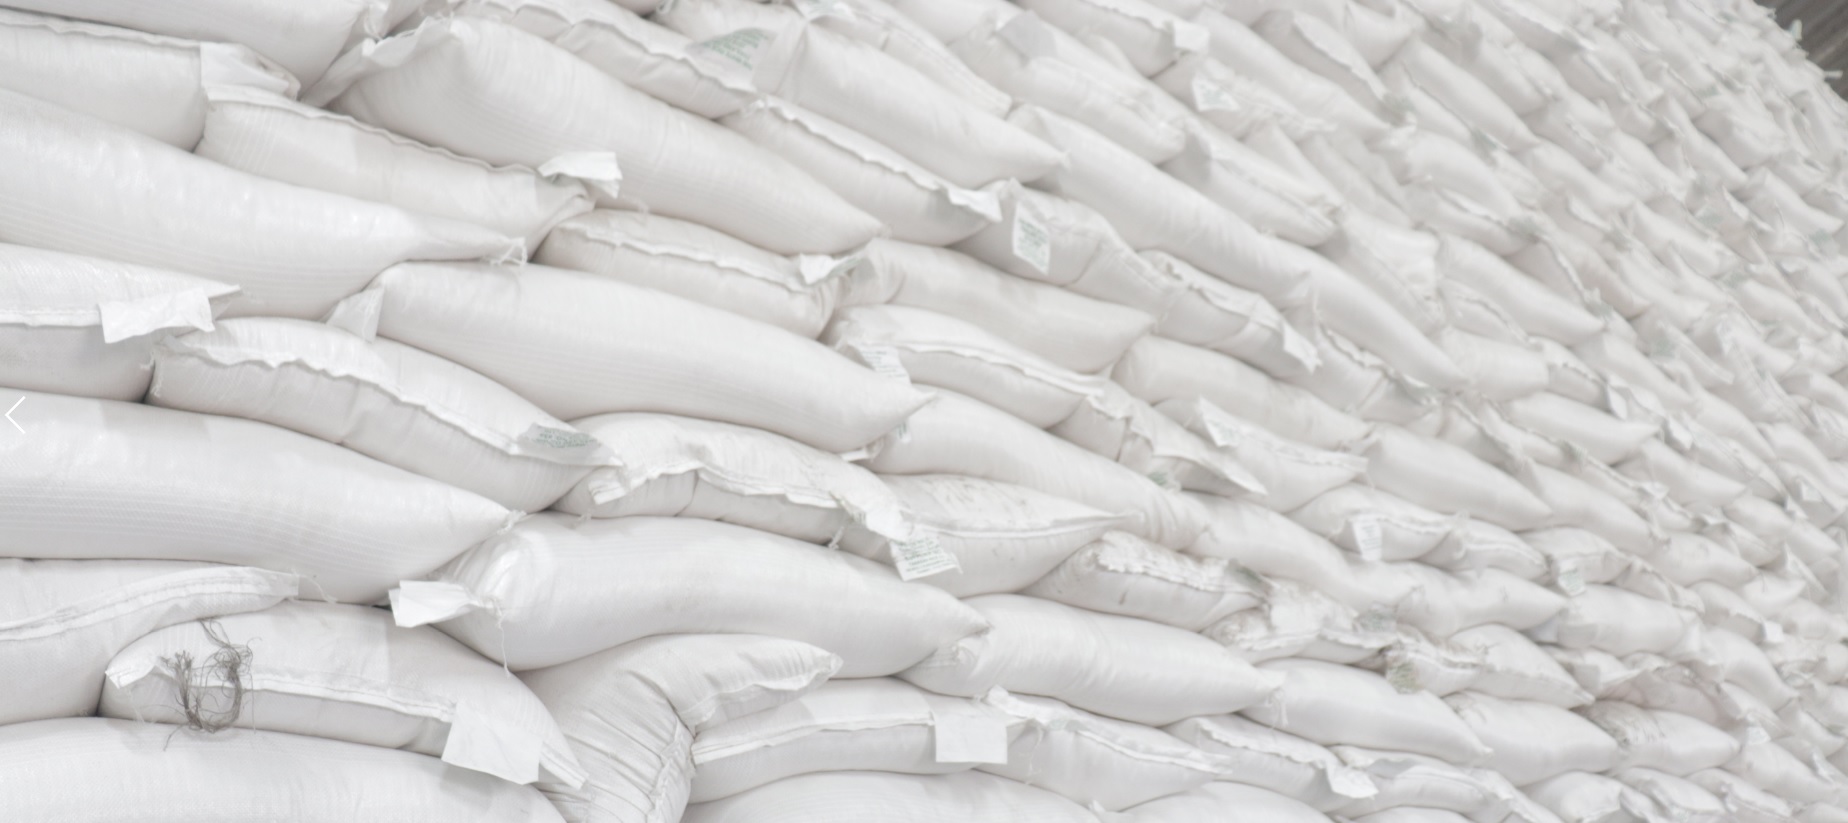 Opération de transport de 80 000 sacs de riz réussie pour AGL Congo